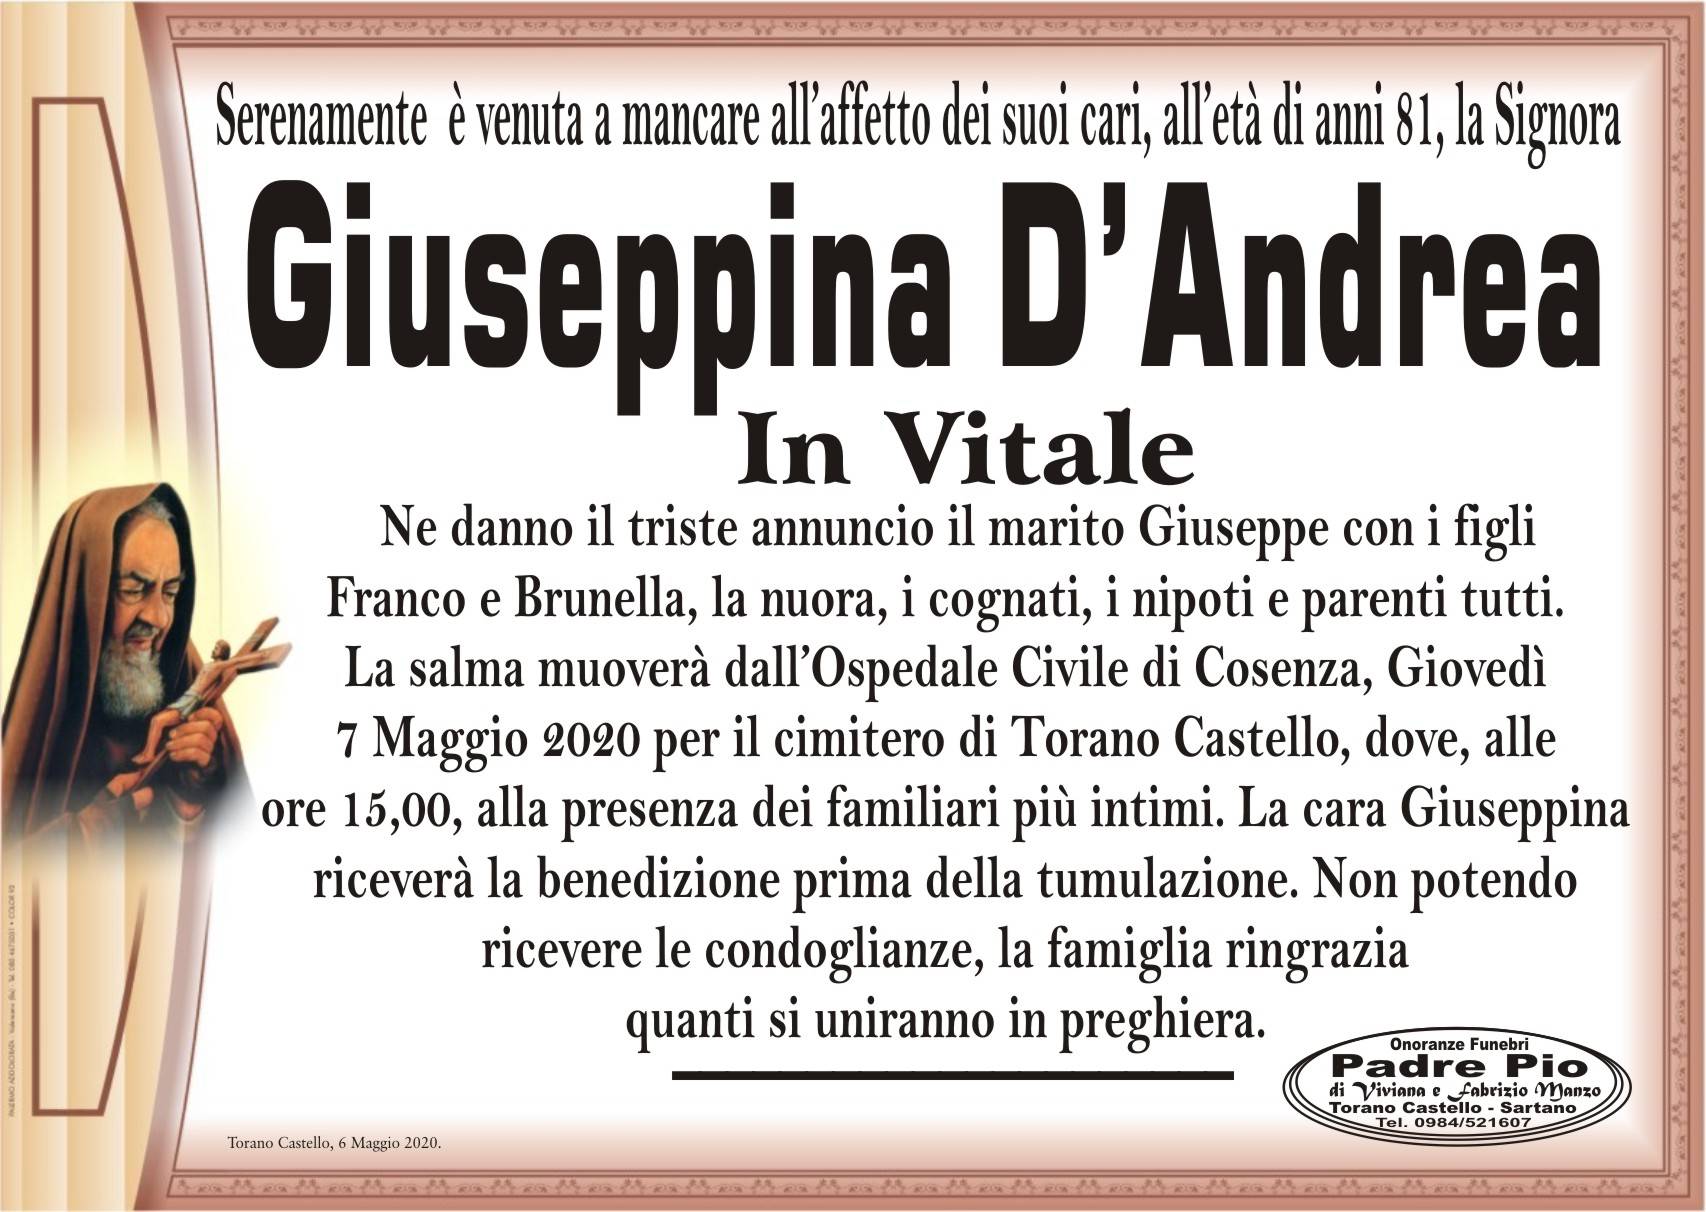 Giuseppina D'Andrea